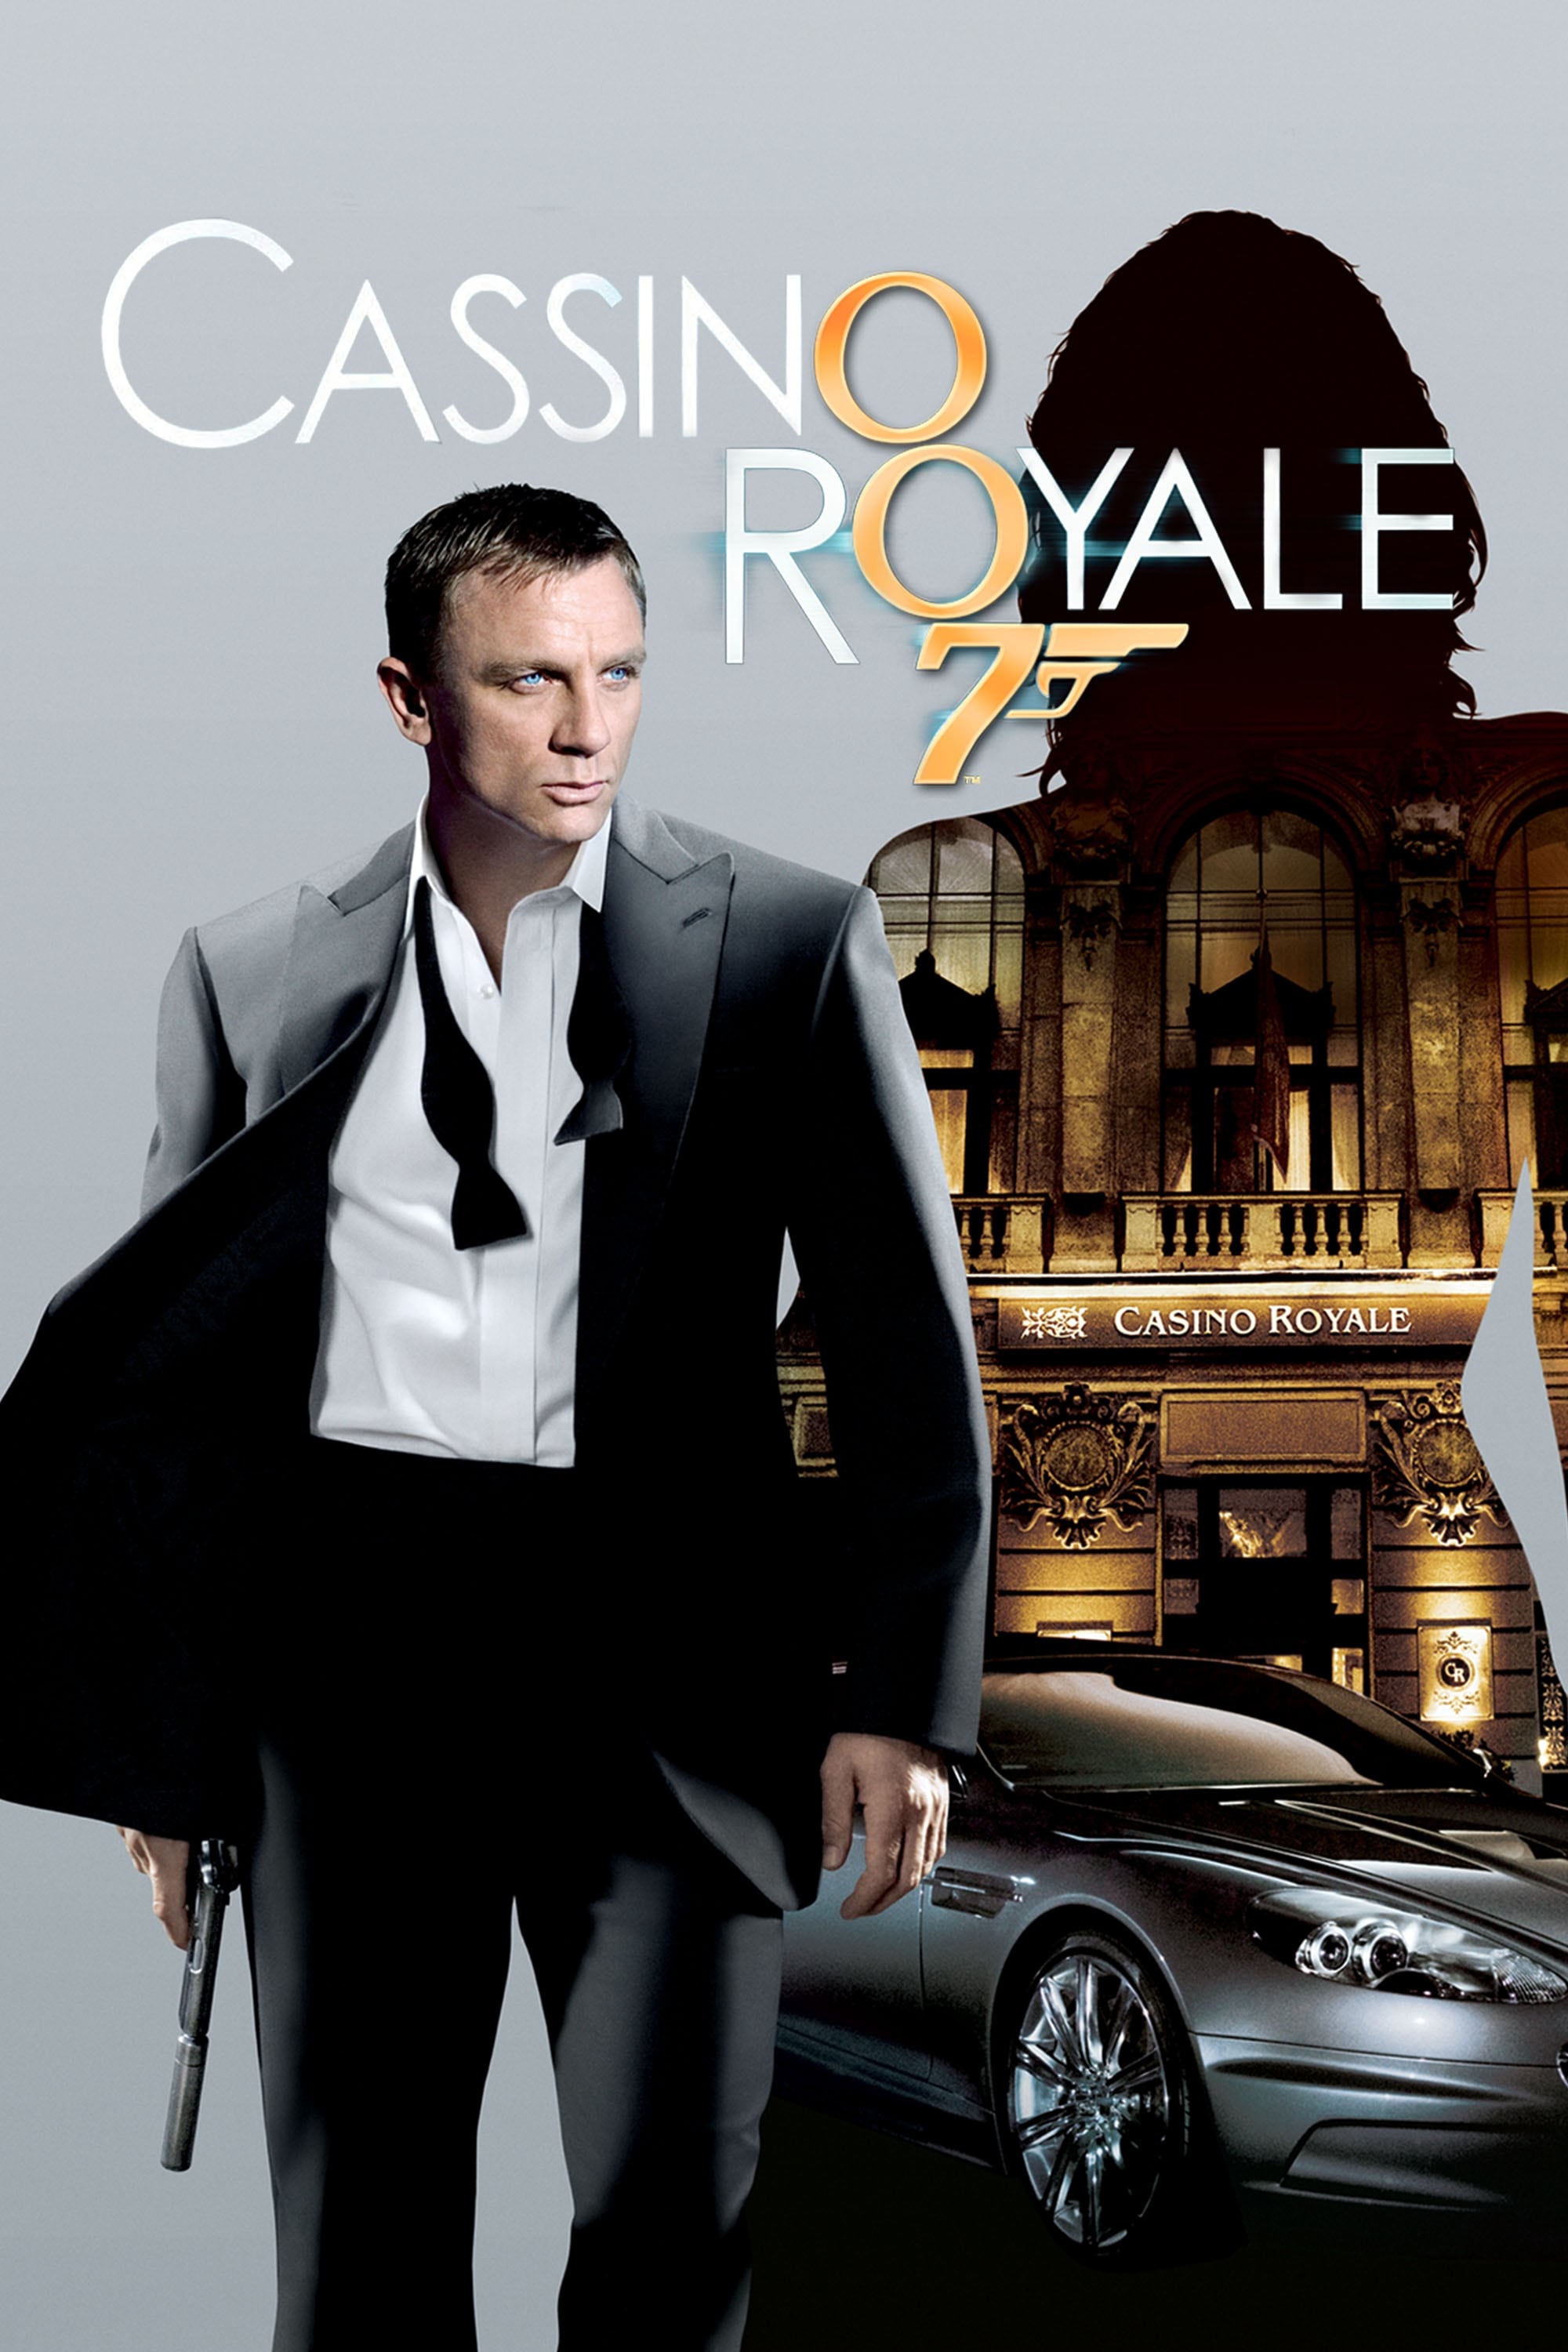 Assistir 007: Cassino Royale Online Gratis (Filme HD) - ObaFlix